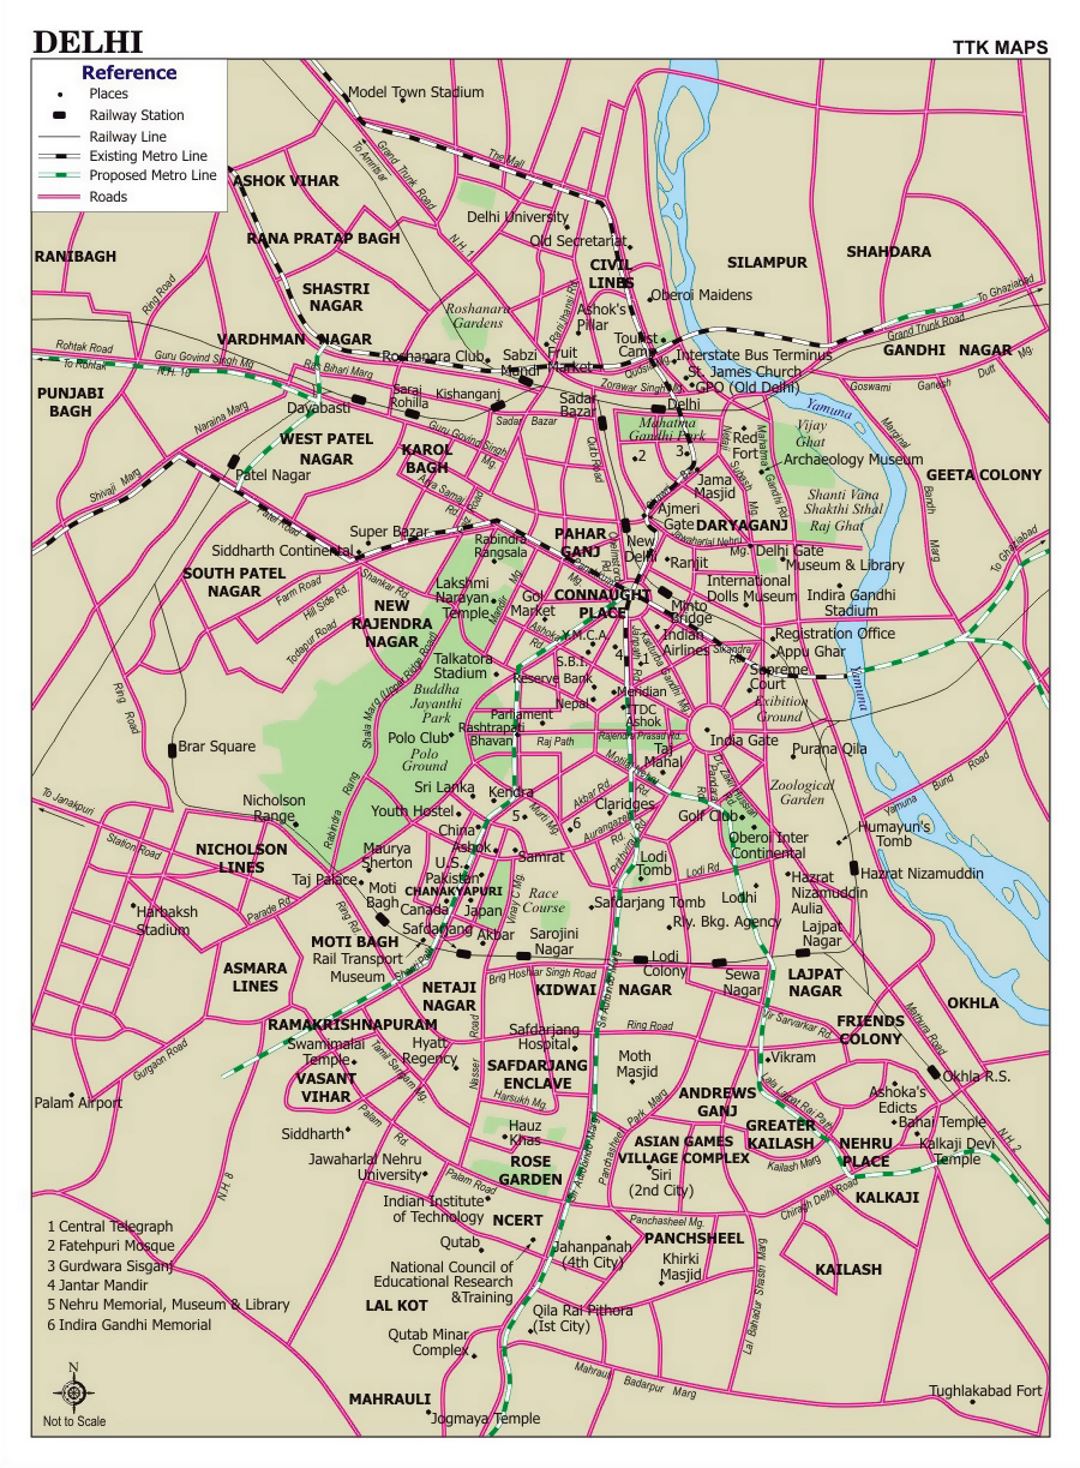 Detallado mapa de carreteras de la ciudad de Delhi